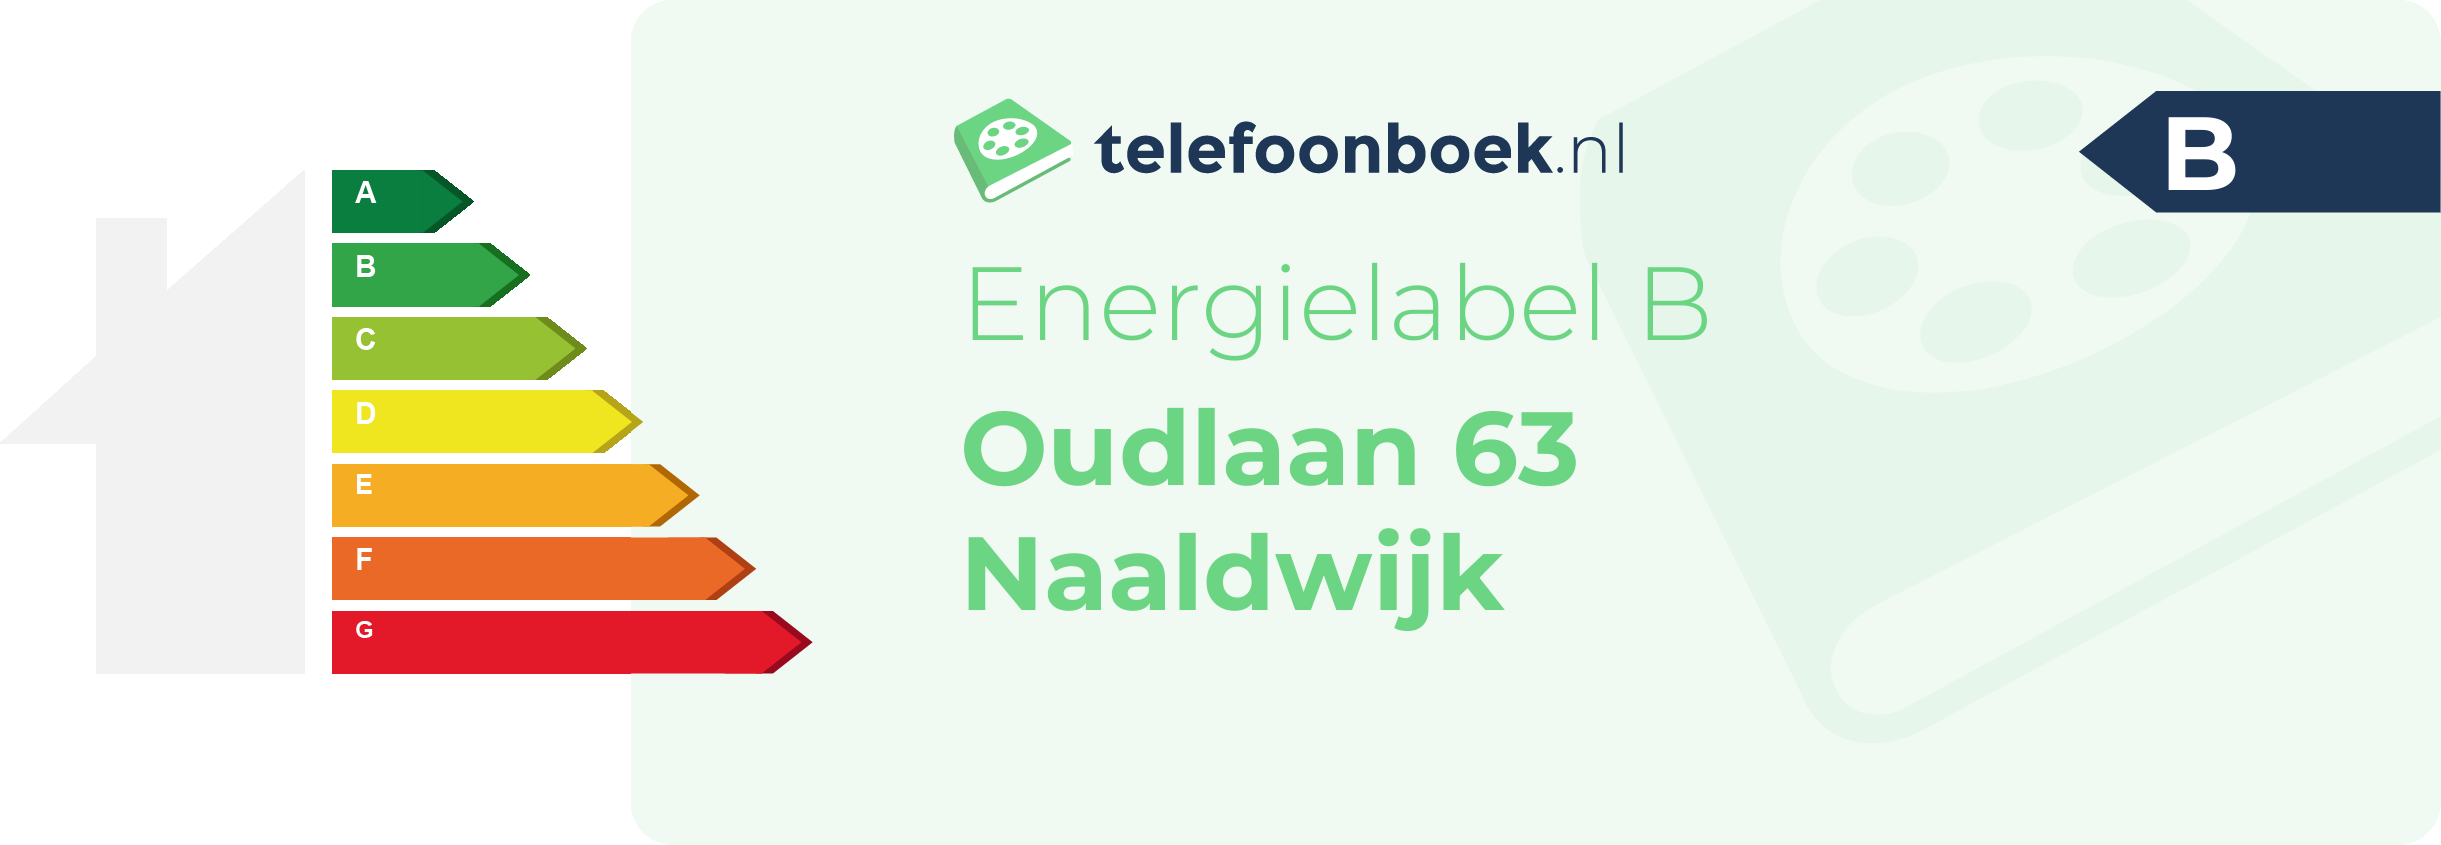 Energielabel Oudlaan 63 Naaldwijk